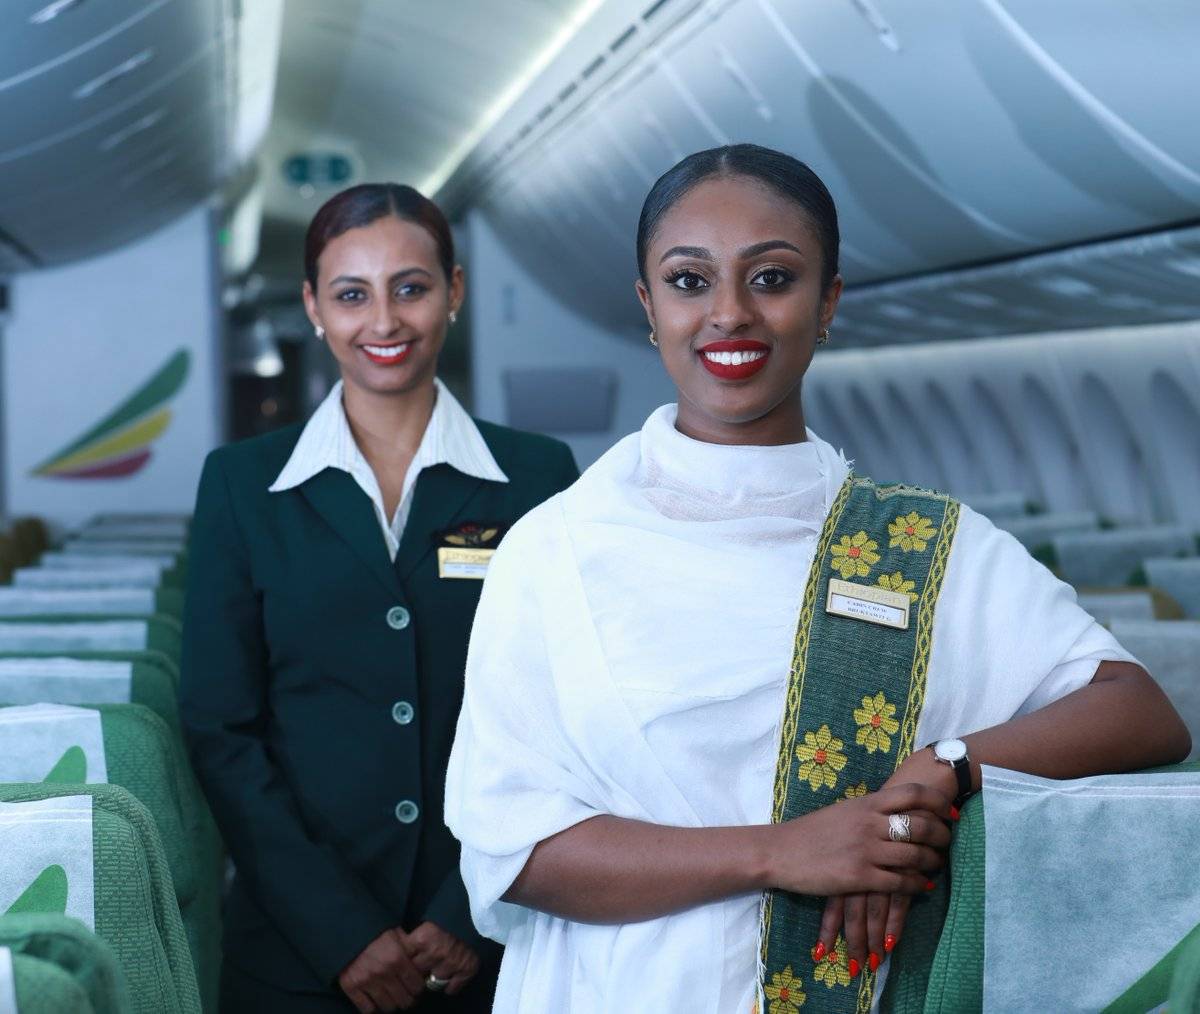 Обзор авиакомпании ethiopian airlines